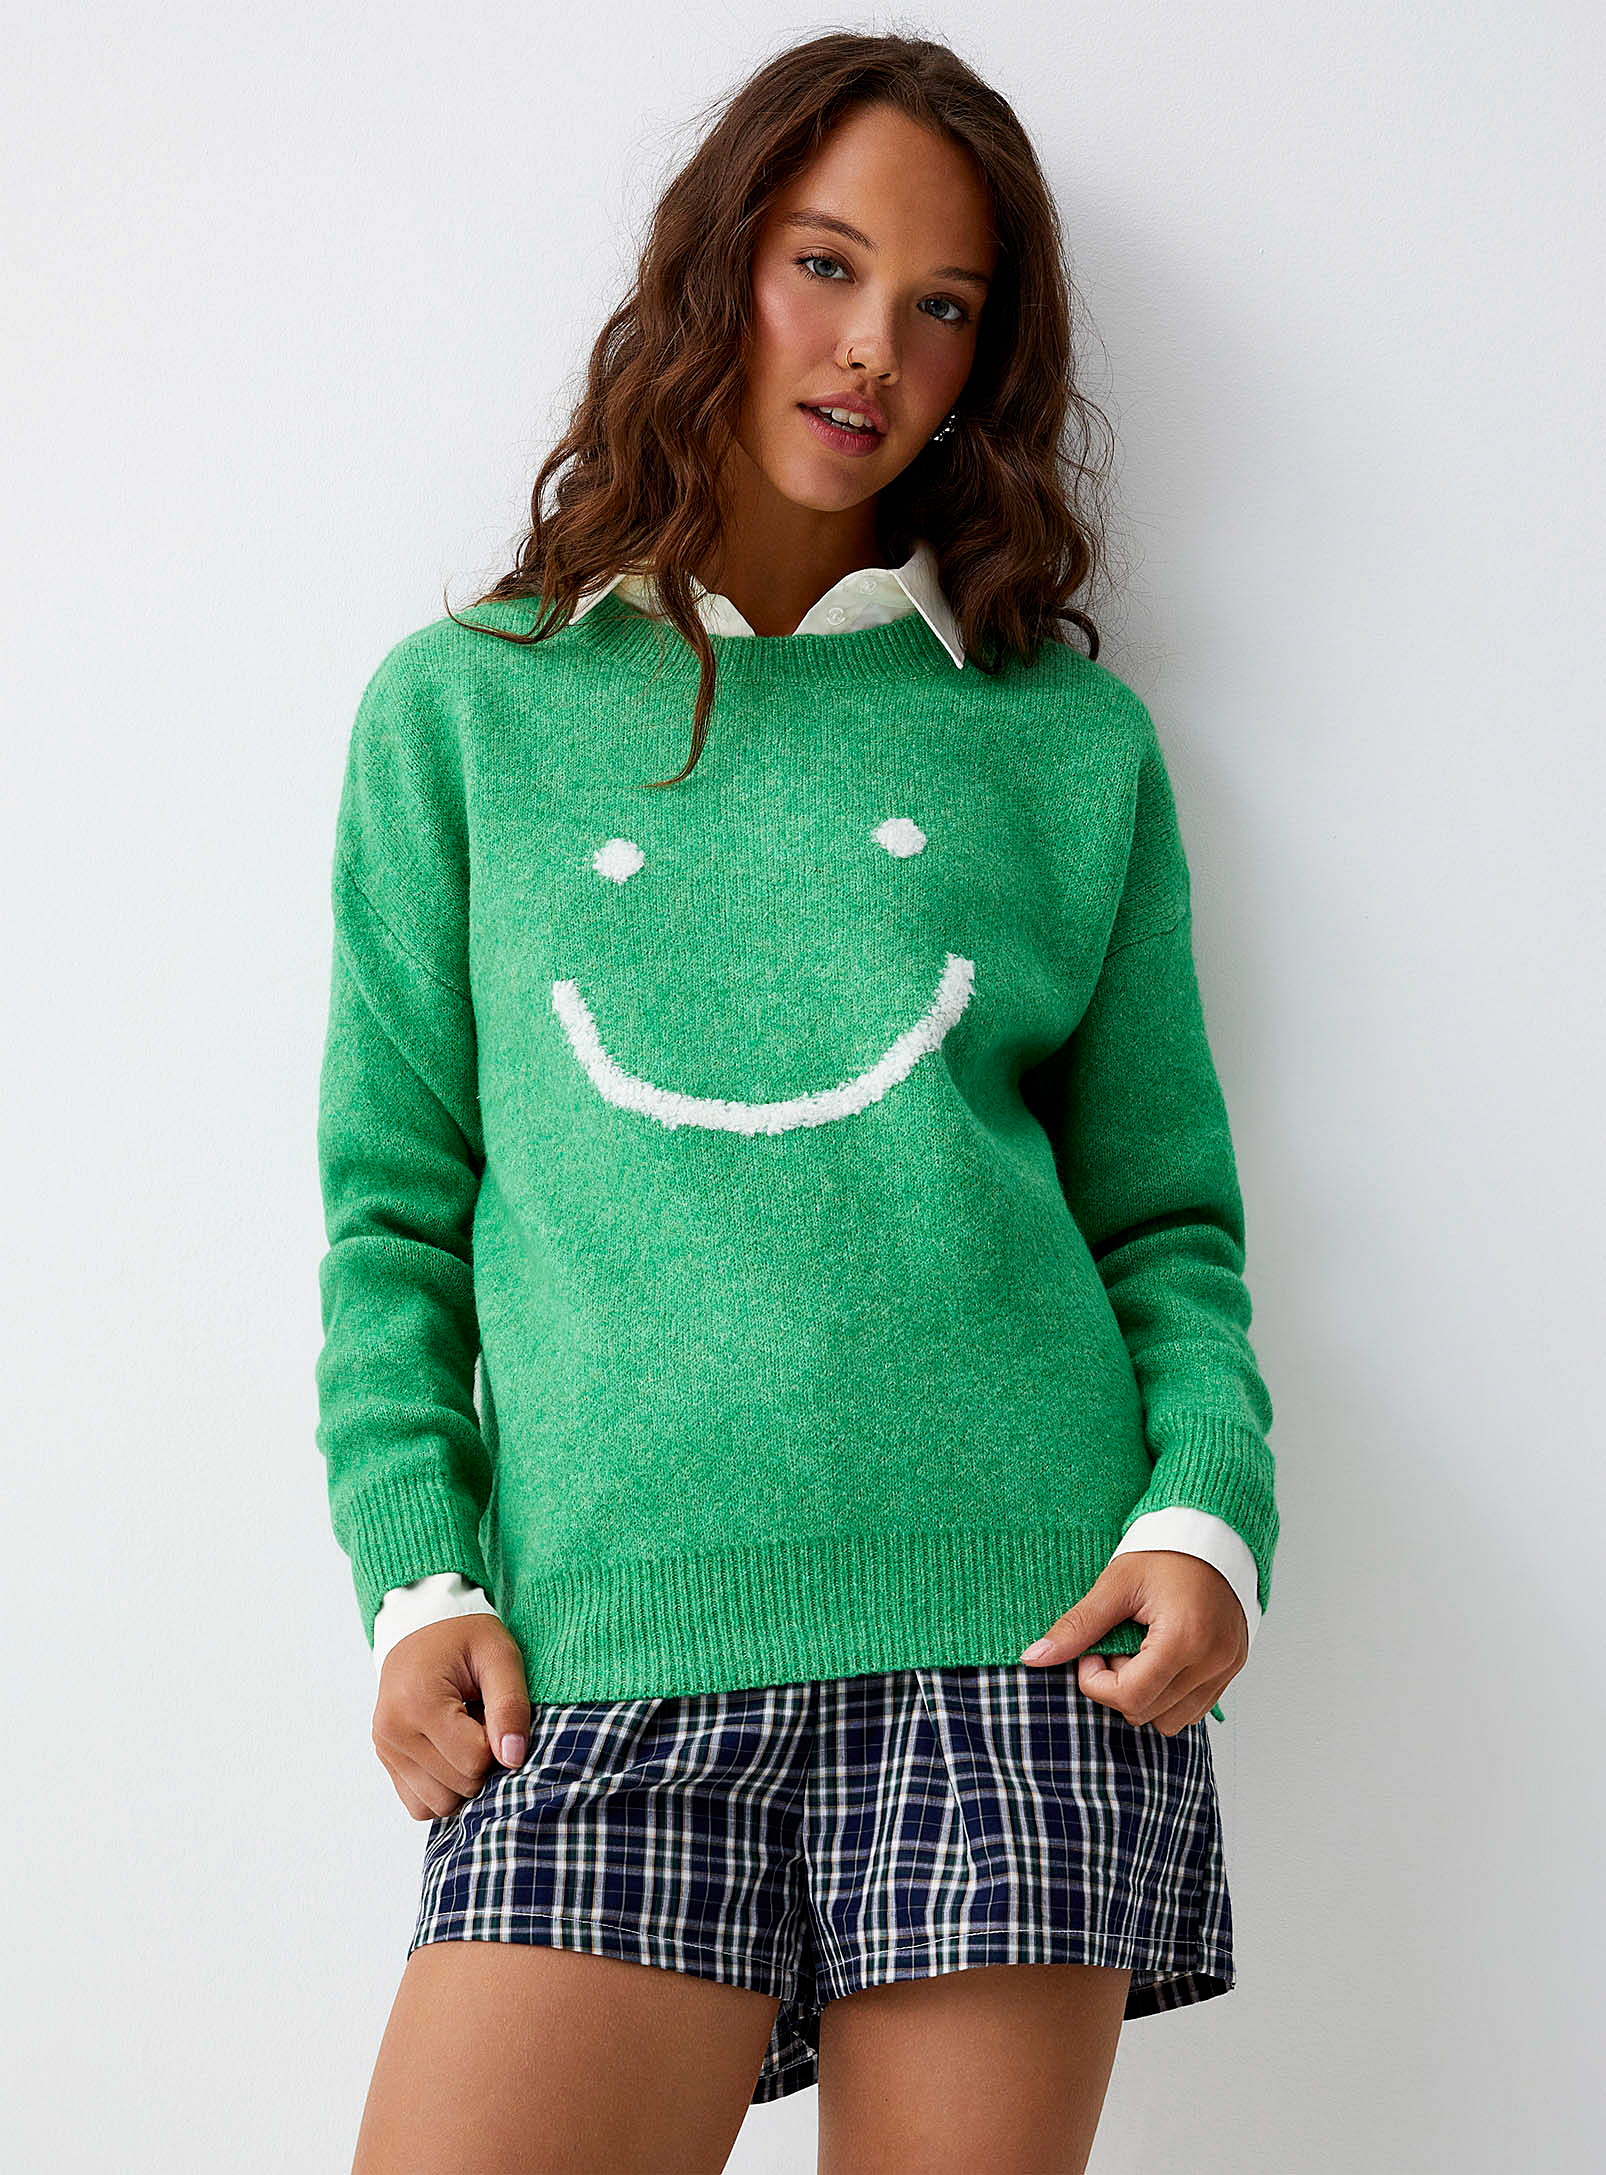 Twik - Women's Smiley face green sweater